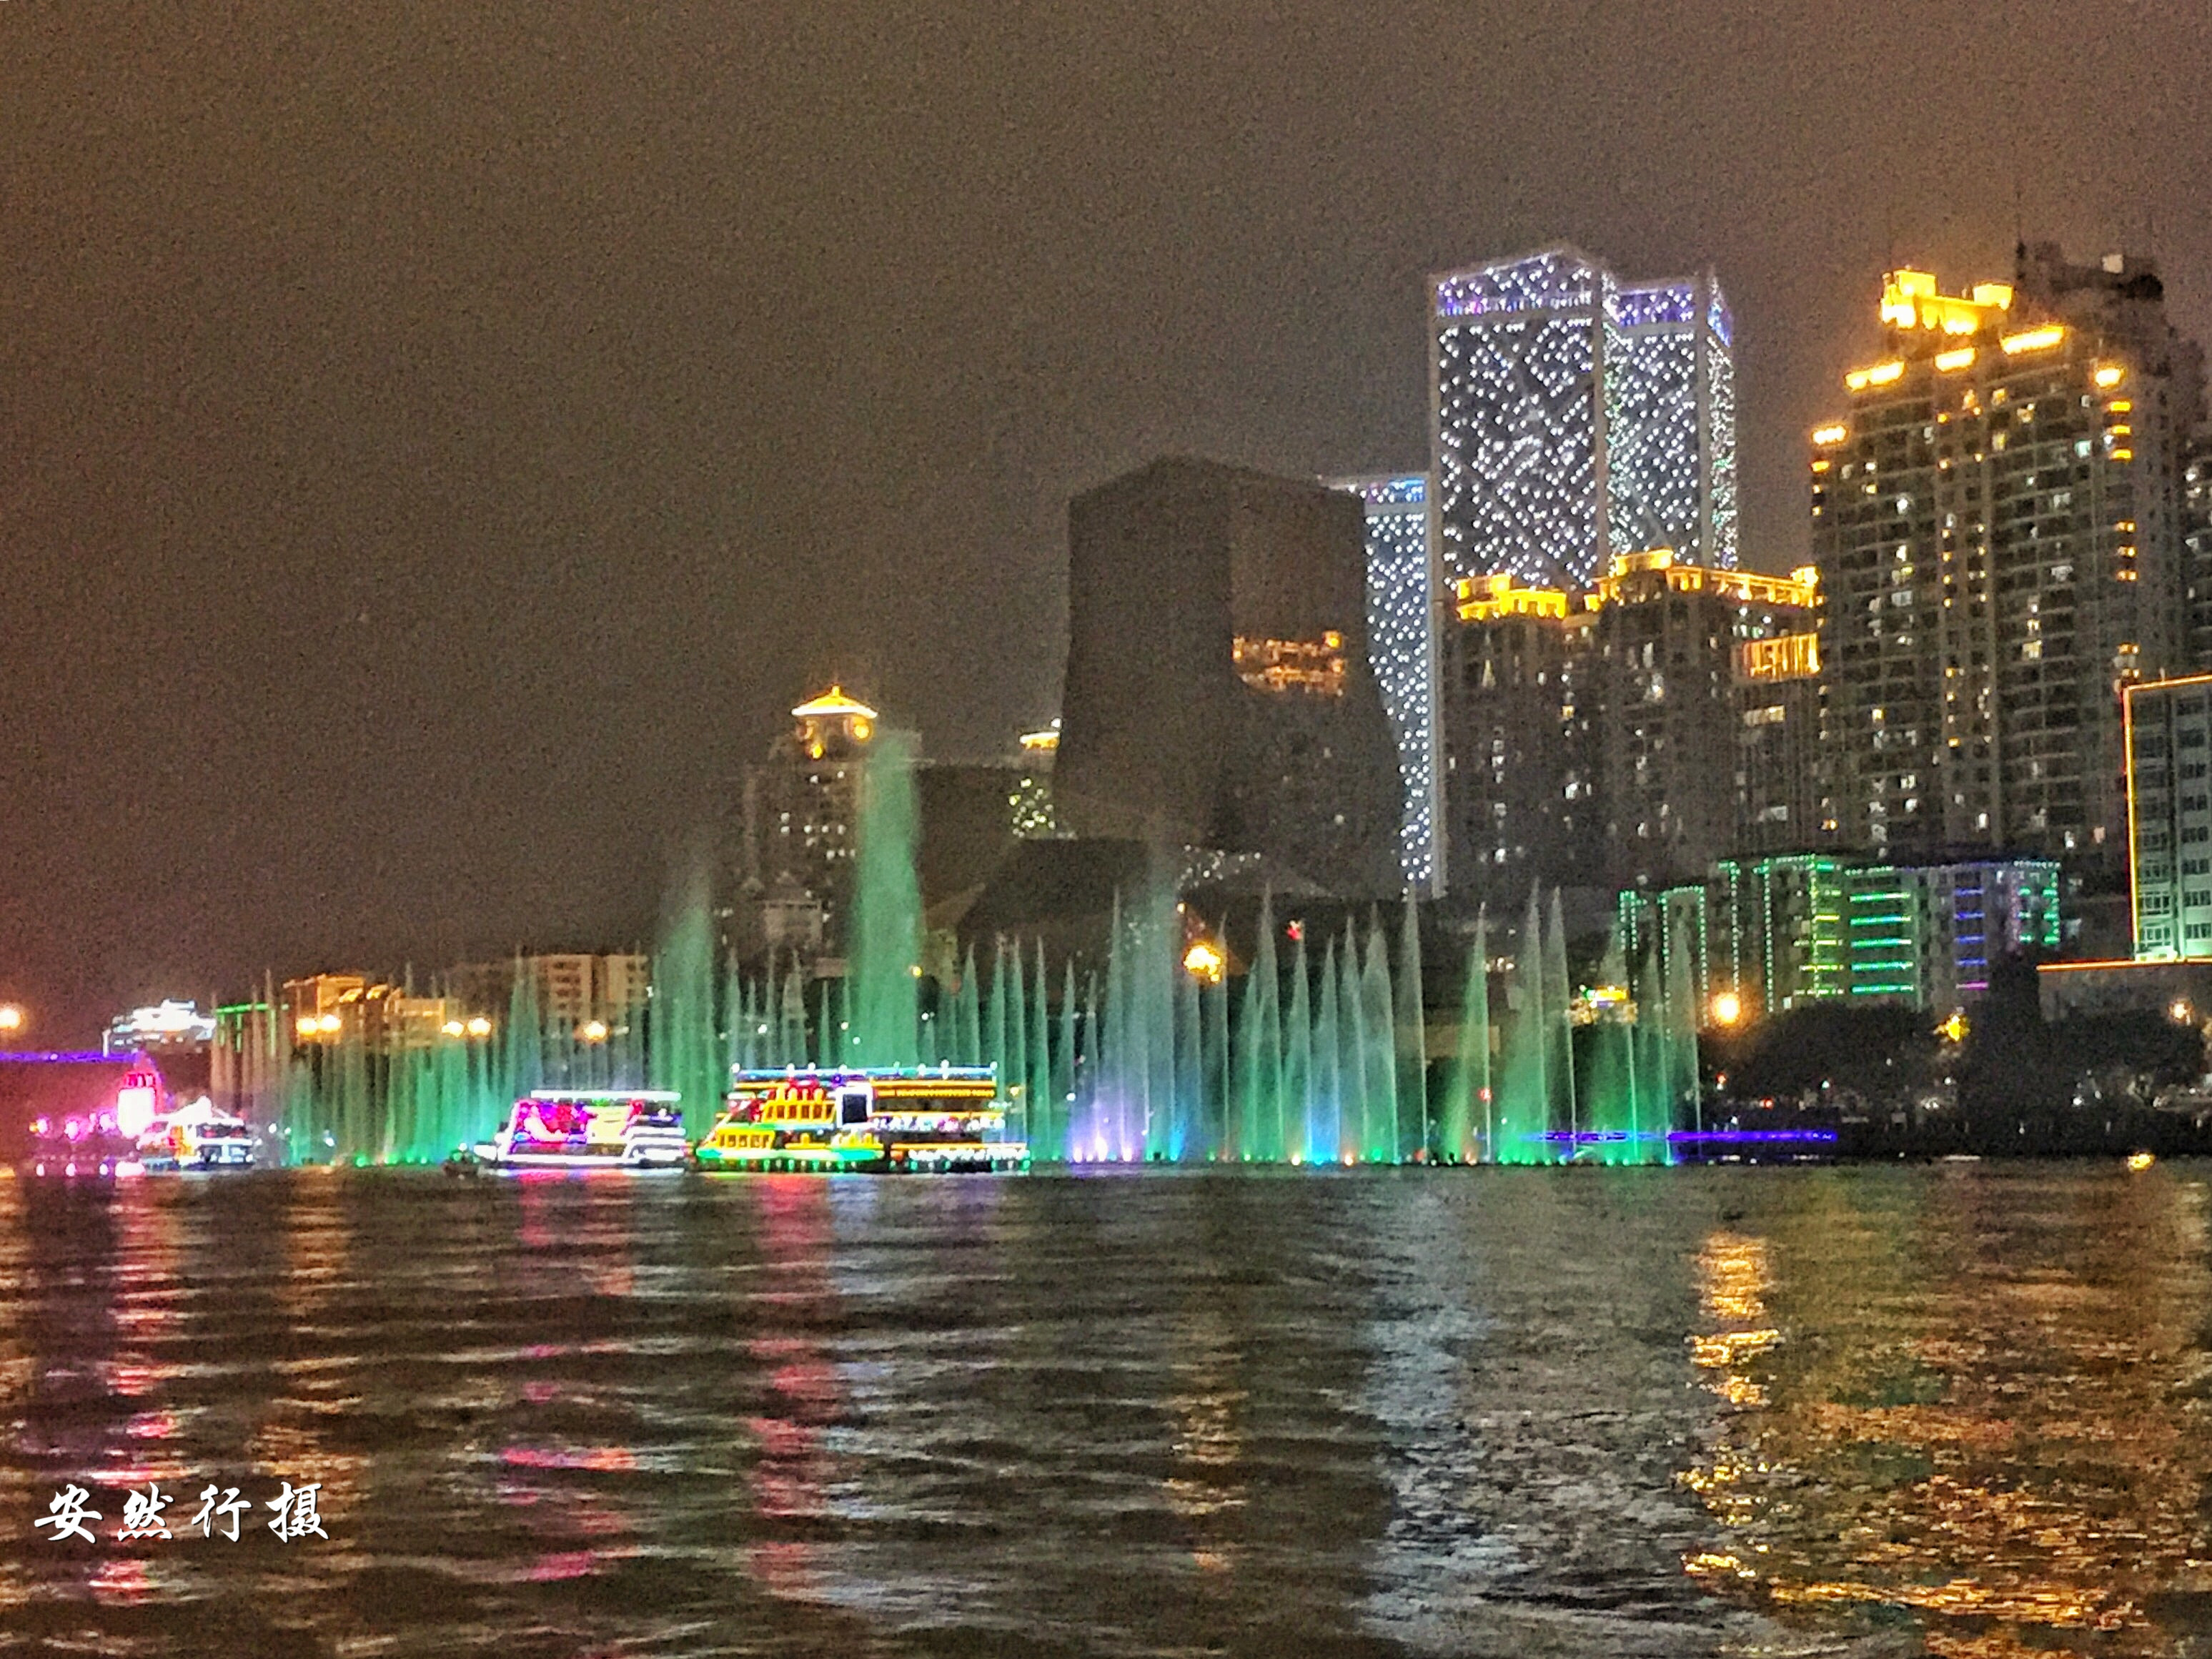 柳州夜景，一半高楼一半山水，在灯光的照应下美极了，值得一游！__财经头条